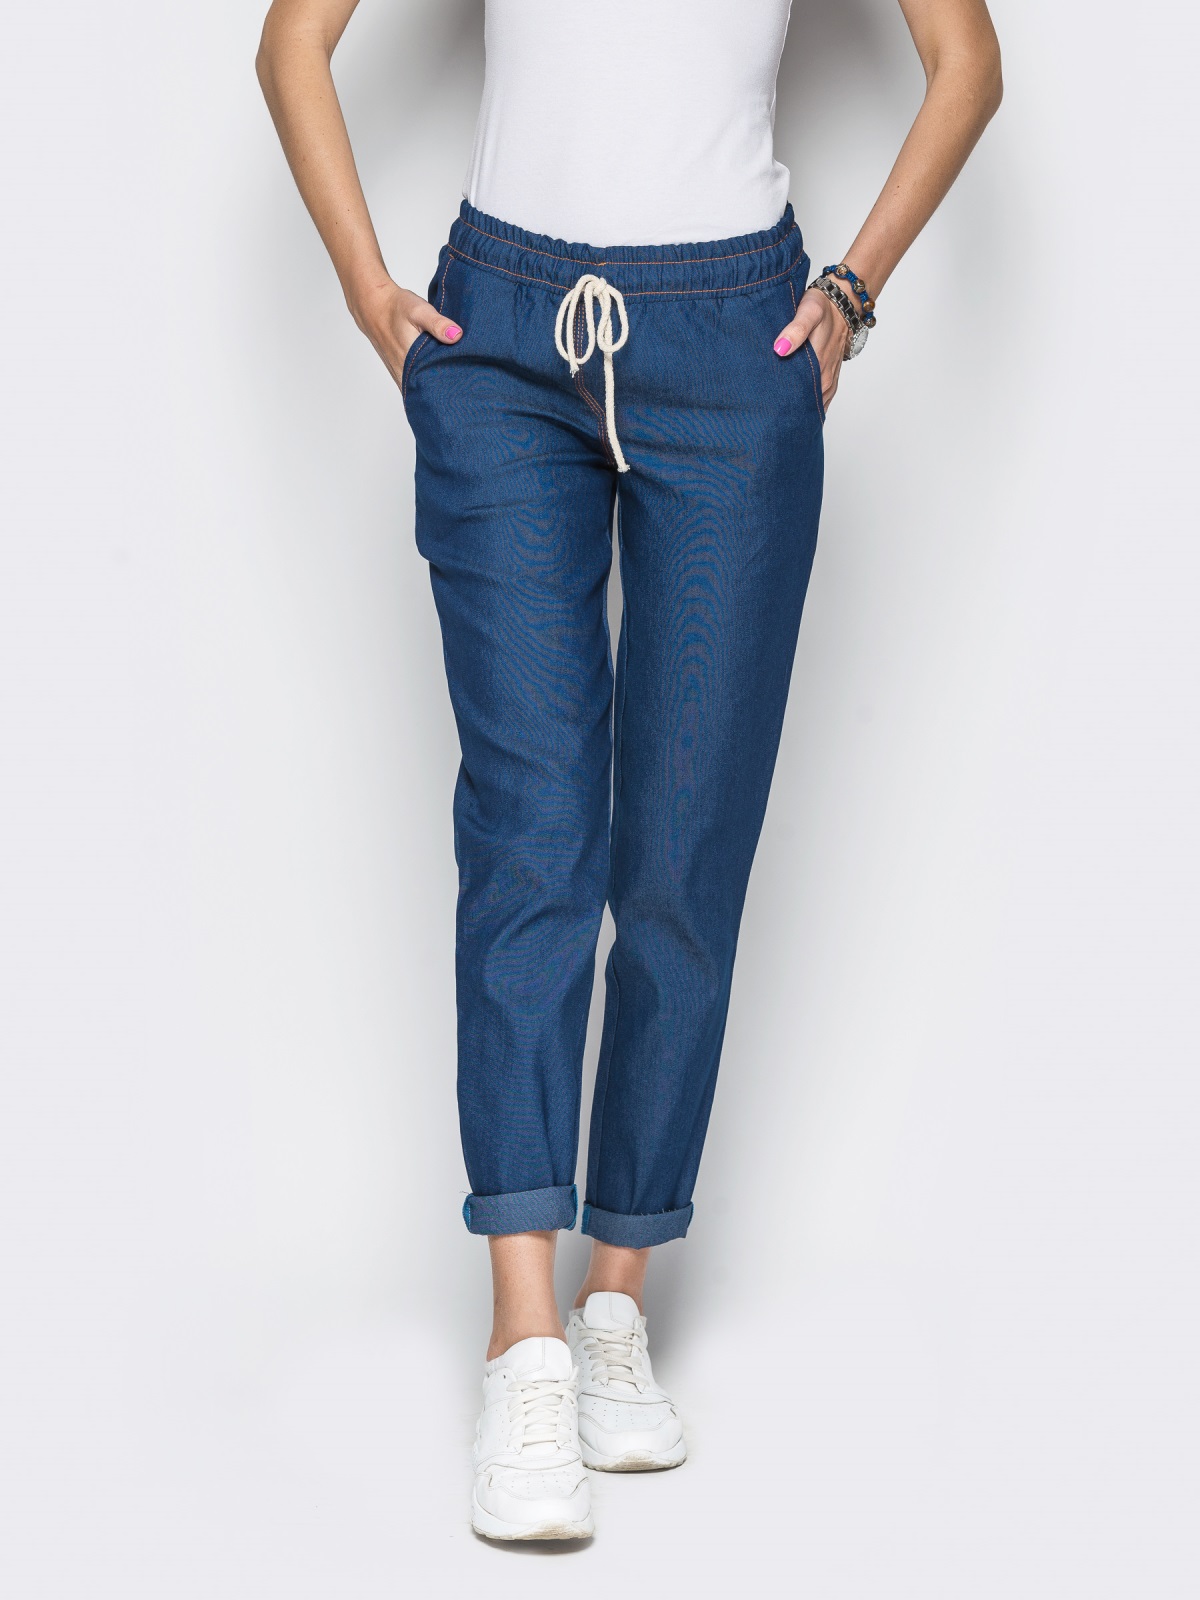 Валдбериес интернет магазин джинсы женские. Джинсовые штаны женские. Брюки на резинке женские. Летние брюки женские. Летние брюки женские на резинке.